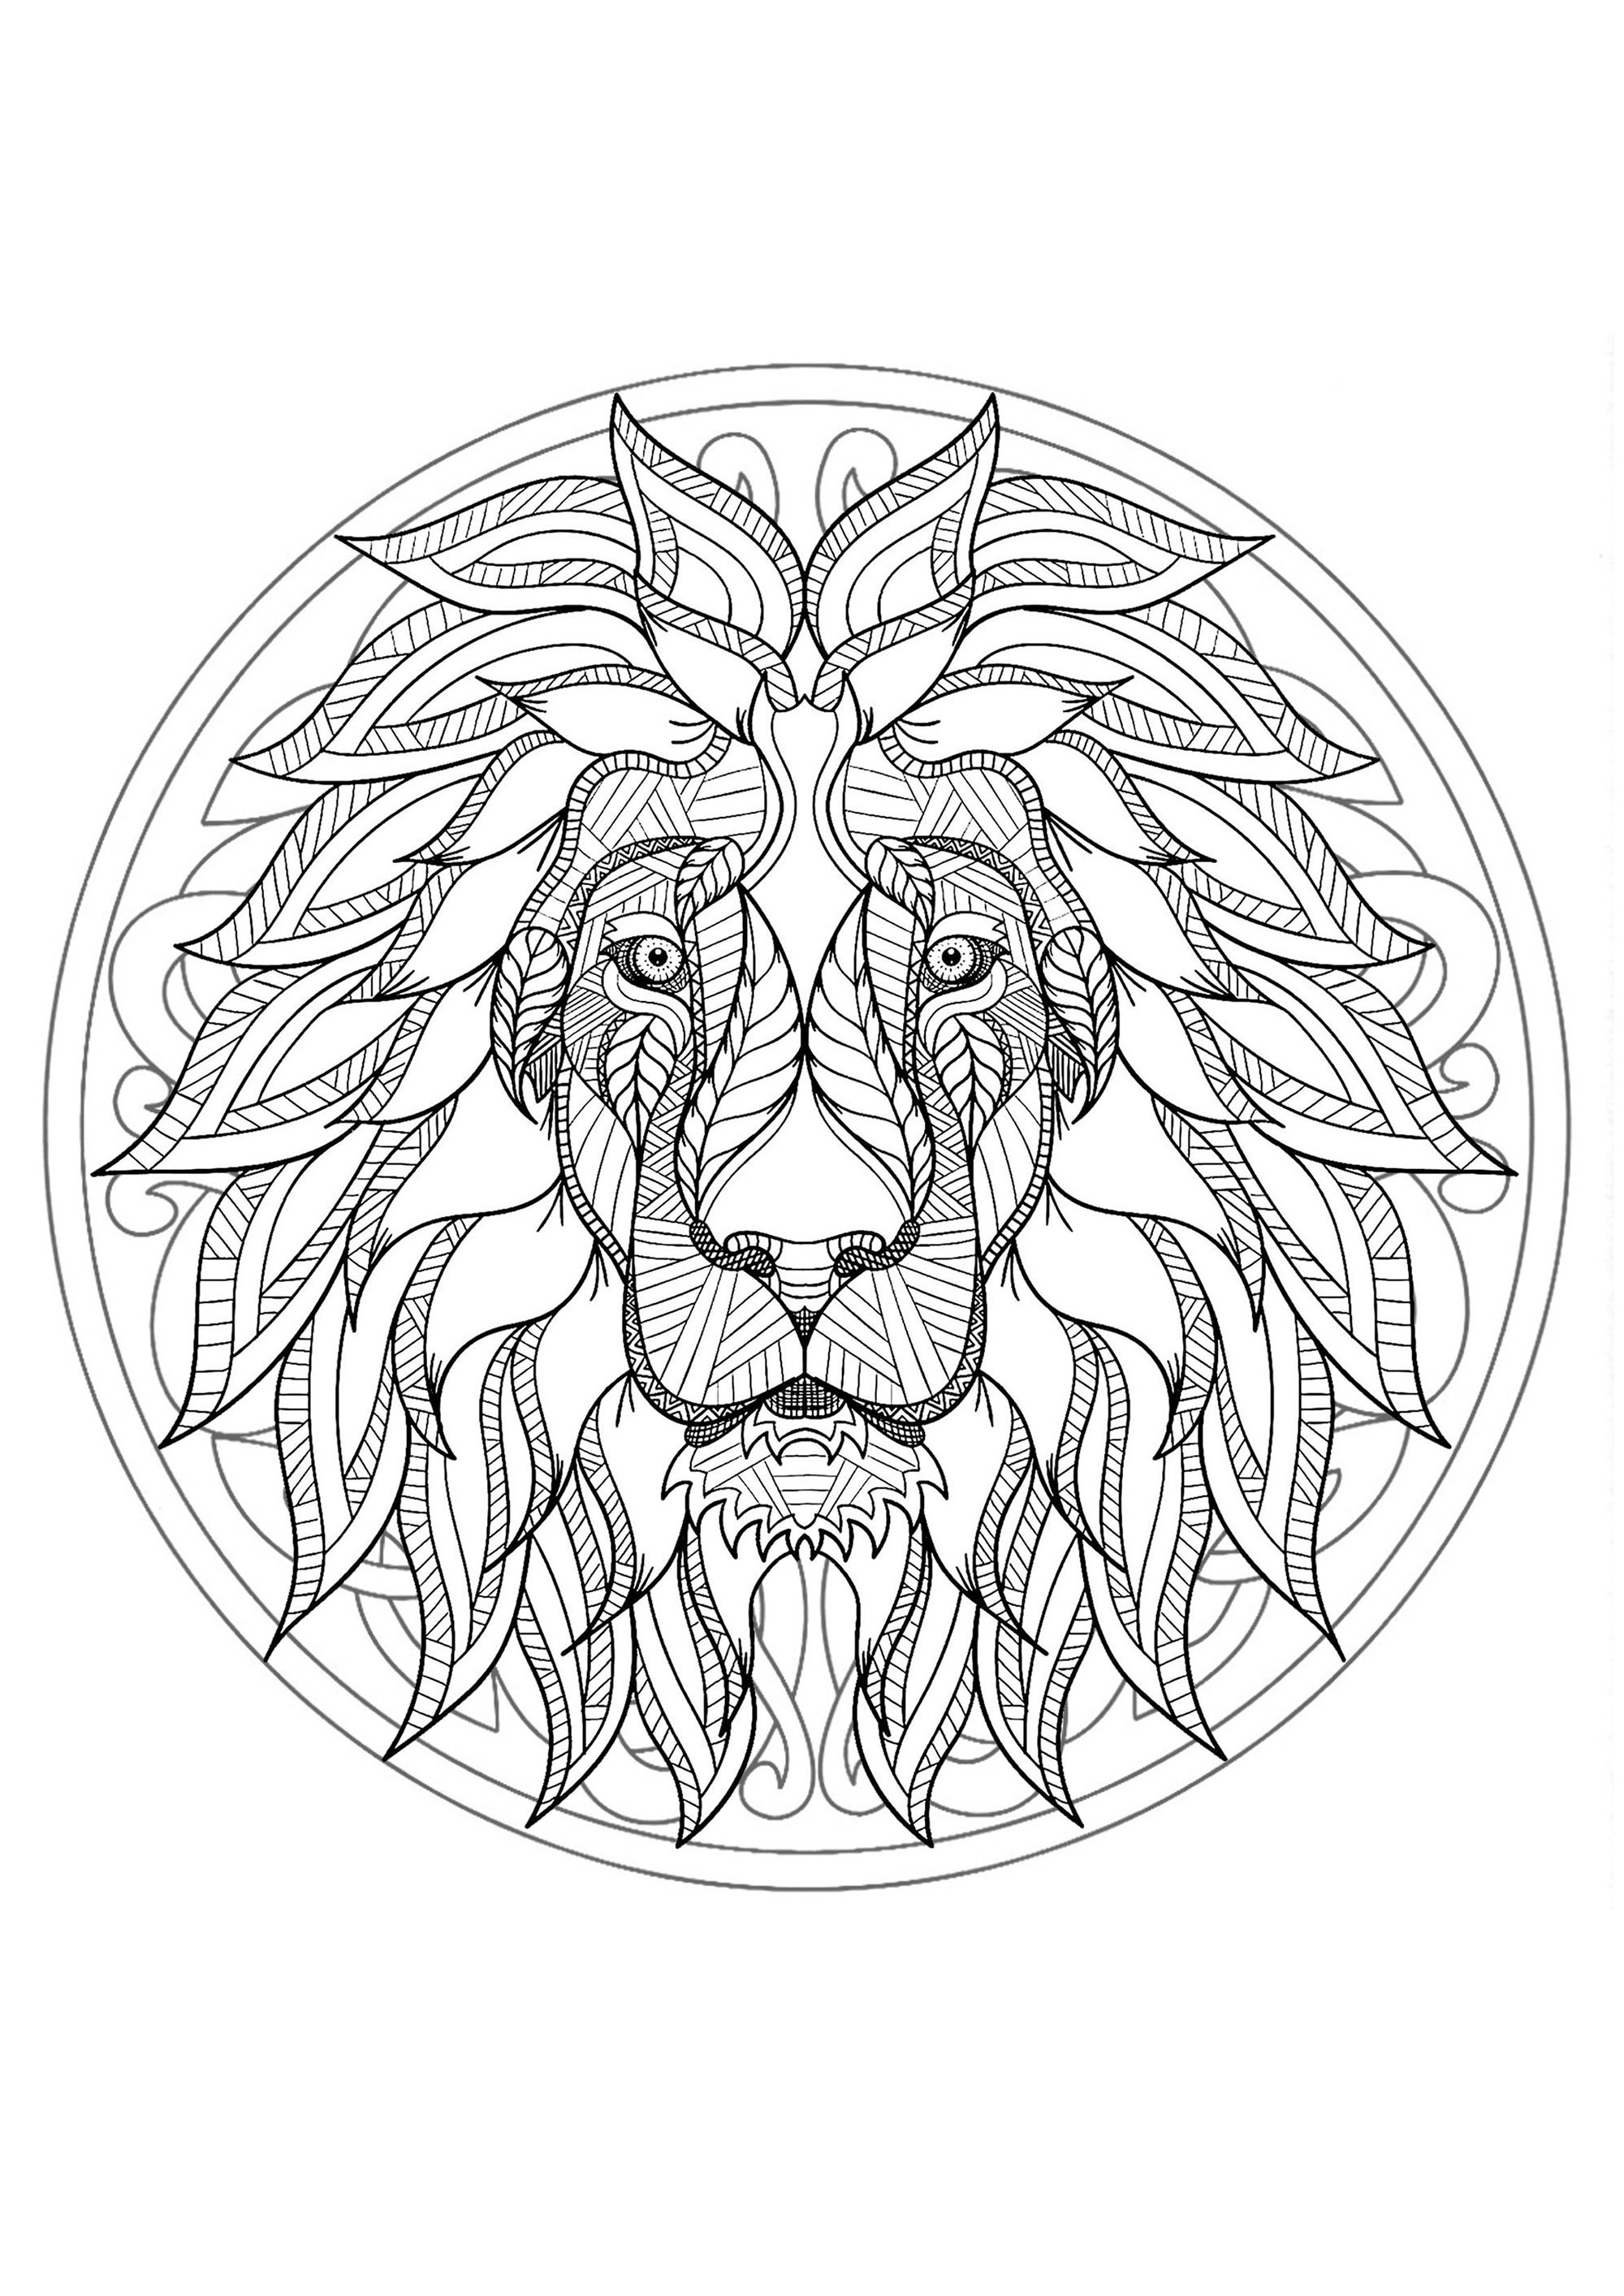 Página para colorear con cabeza de león y hermoso mandala de fondo